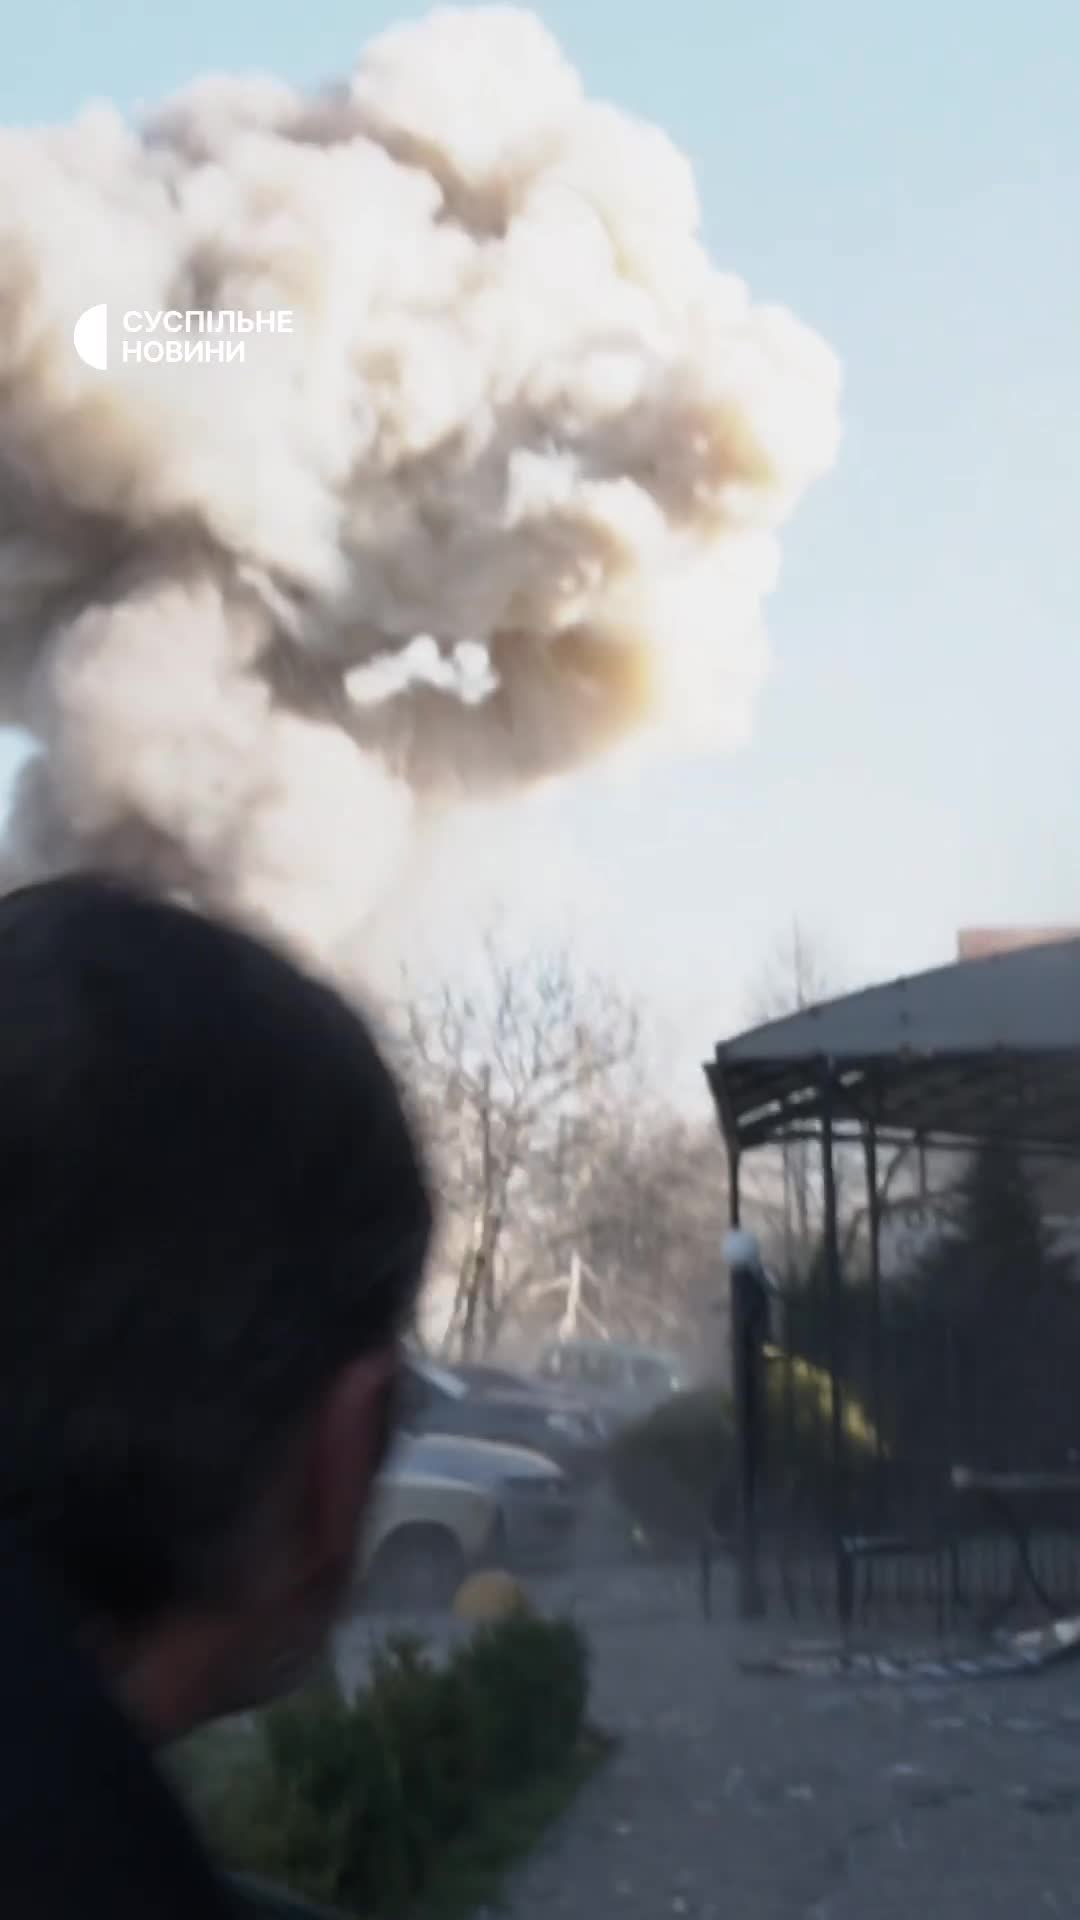 扎波罗热发生两枚导弹袭击，救援人员、警察和记者都在现场